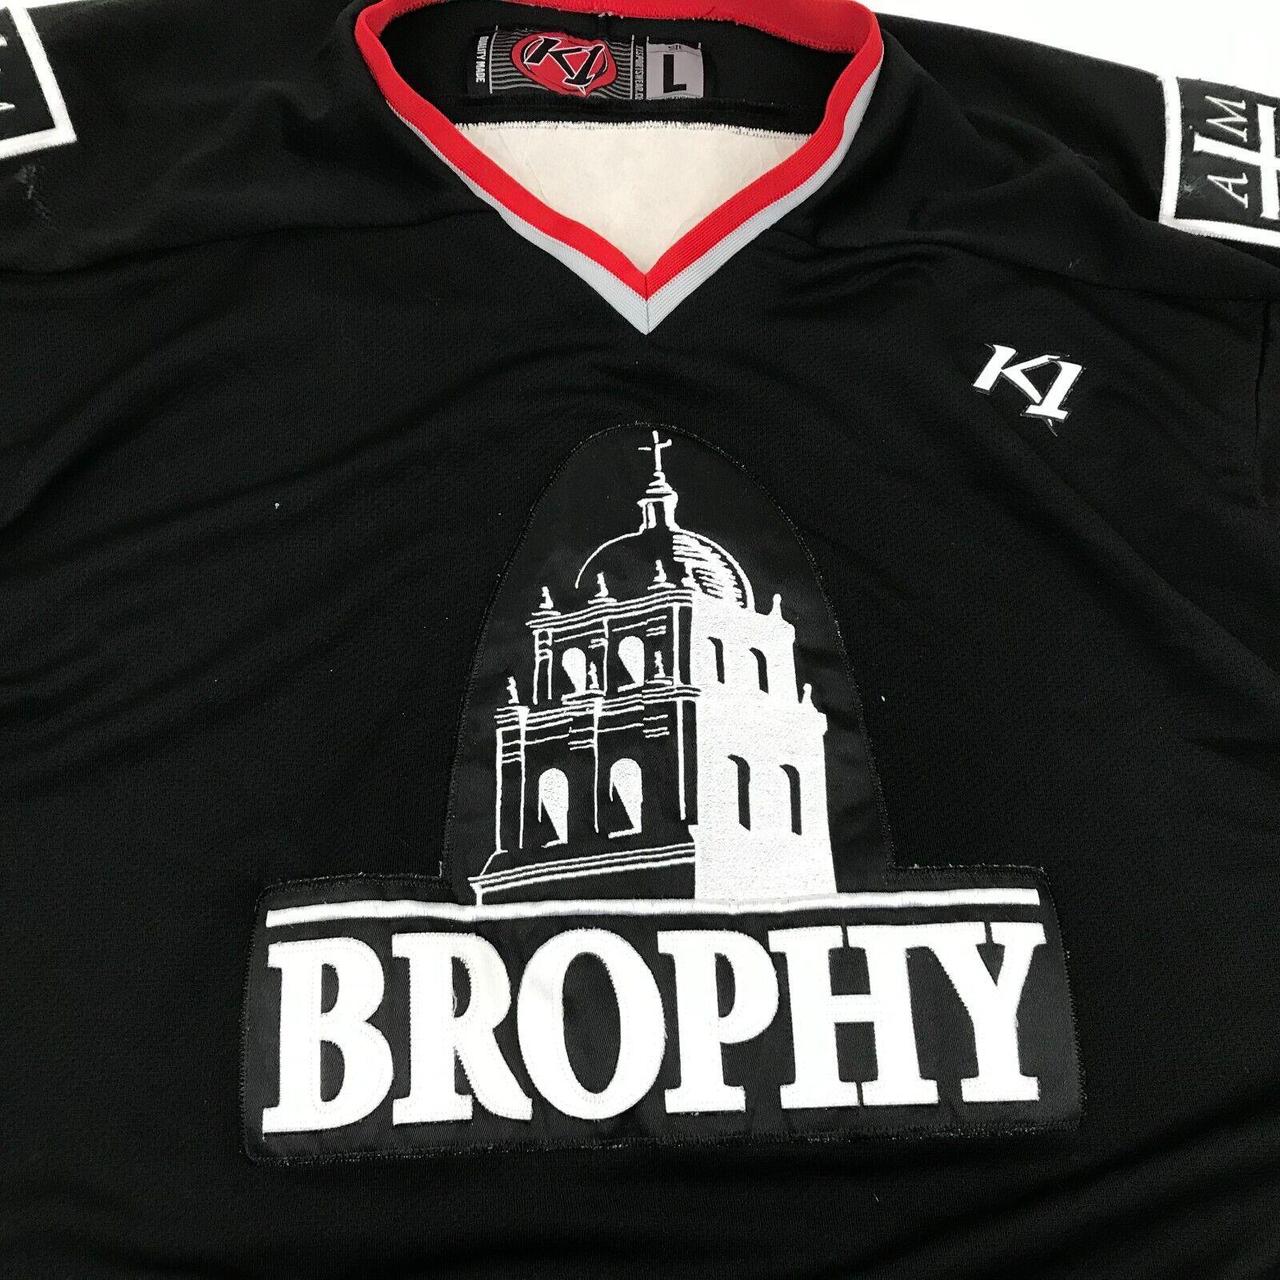 Brophy Broncos Hockey Jersey Size Large Black Long - Depop